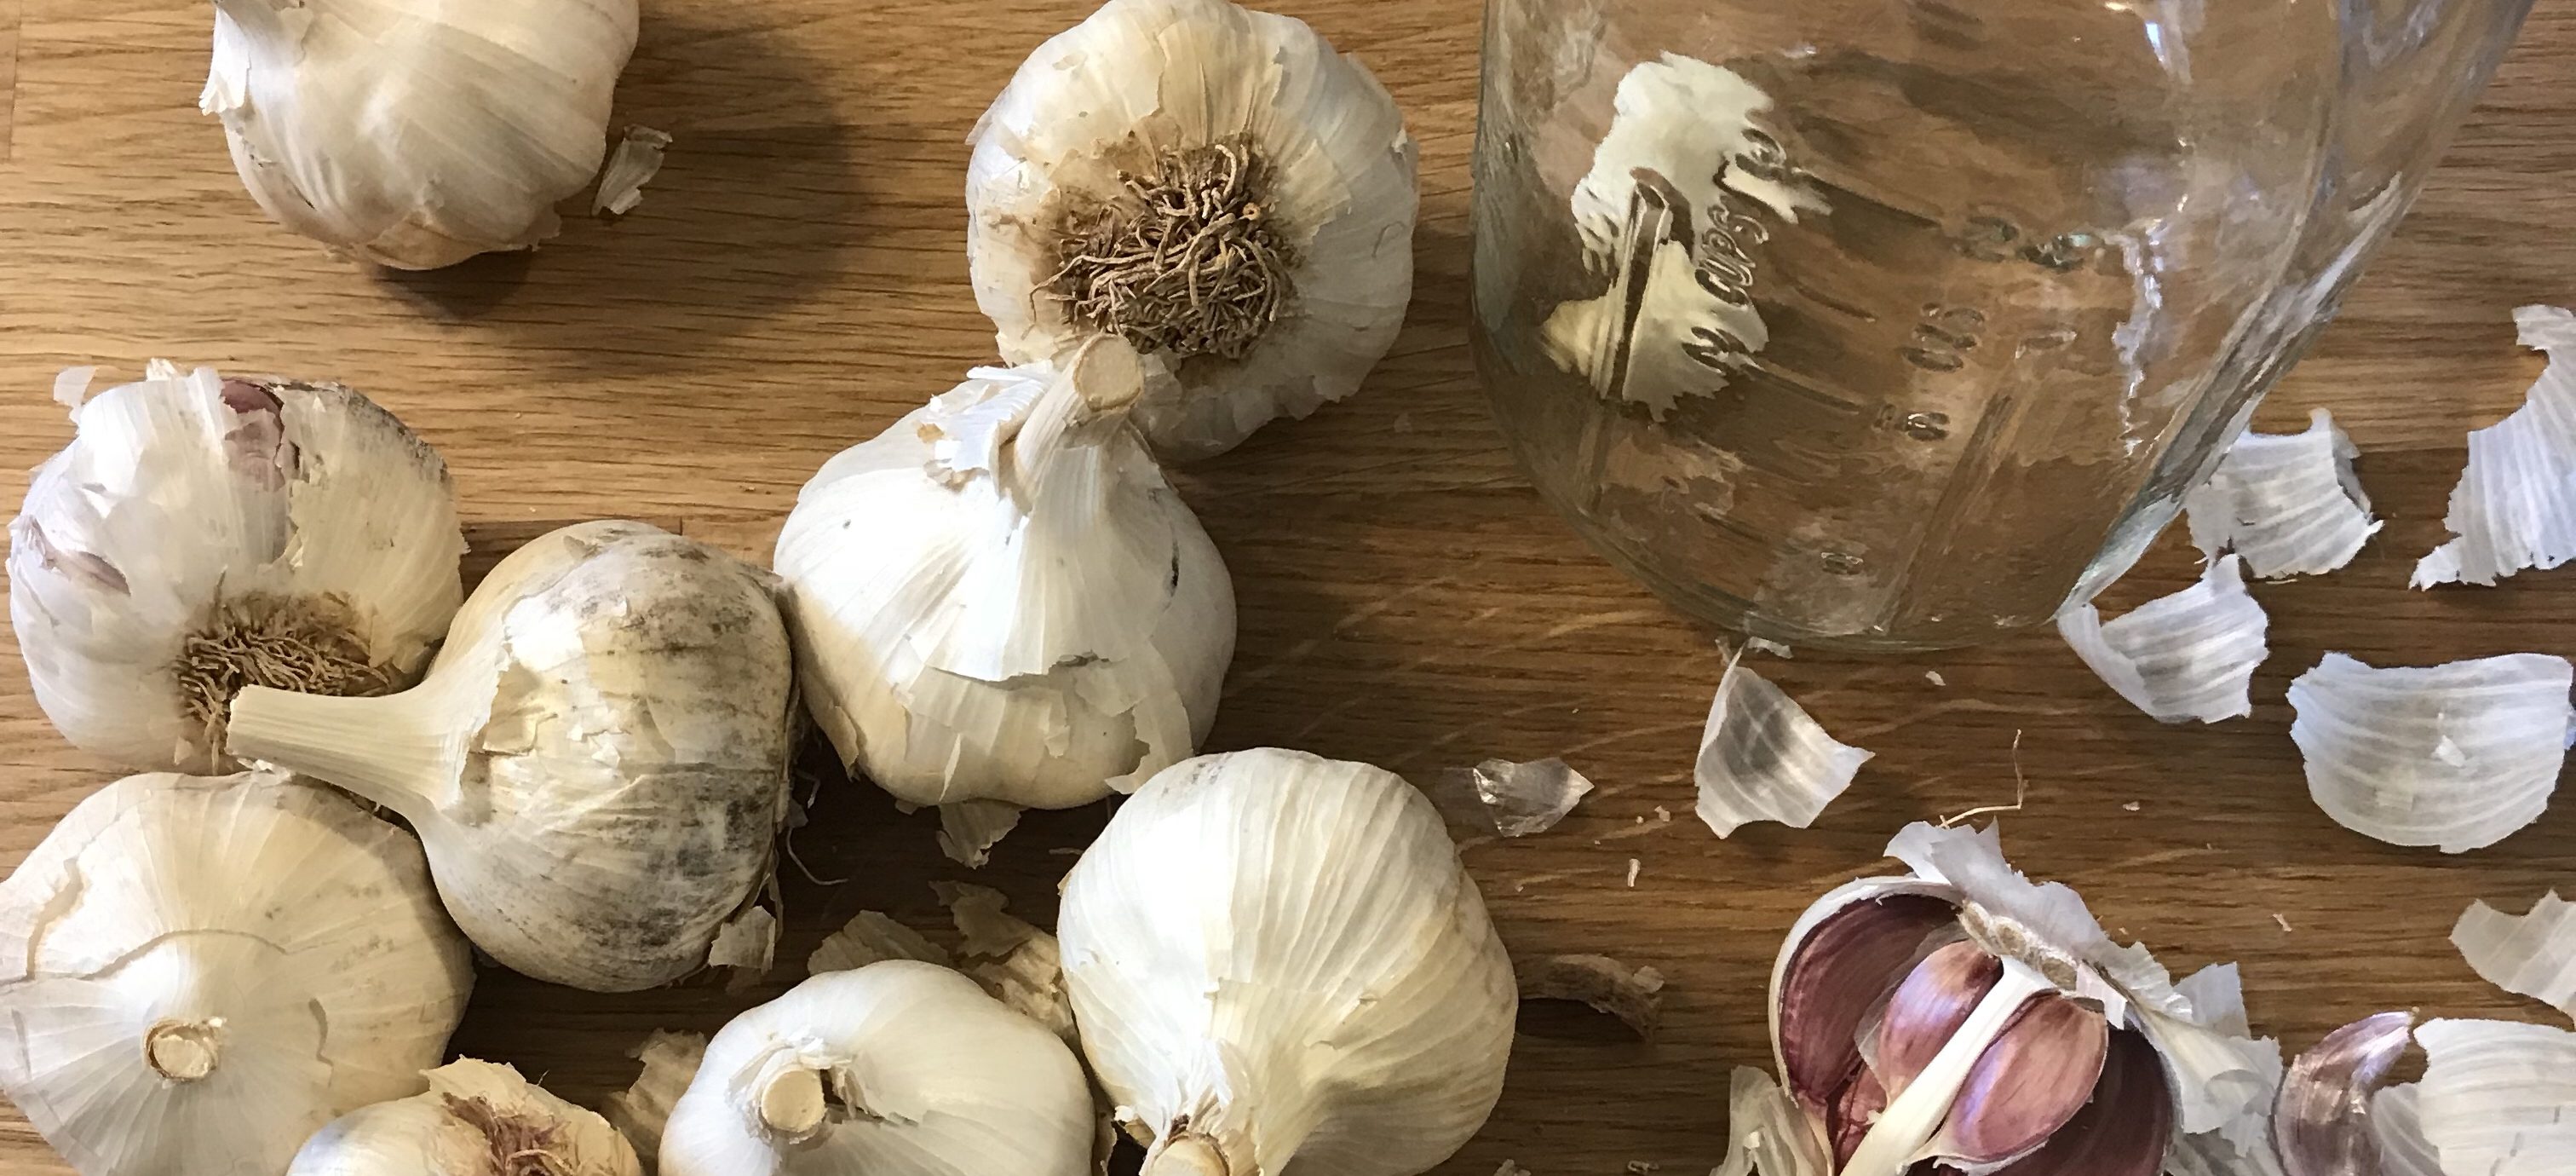 Fermented Garlic